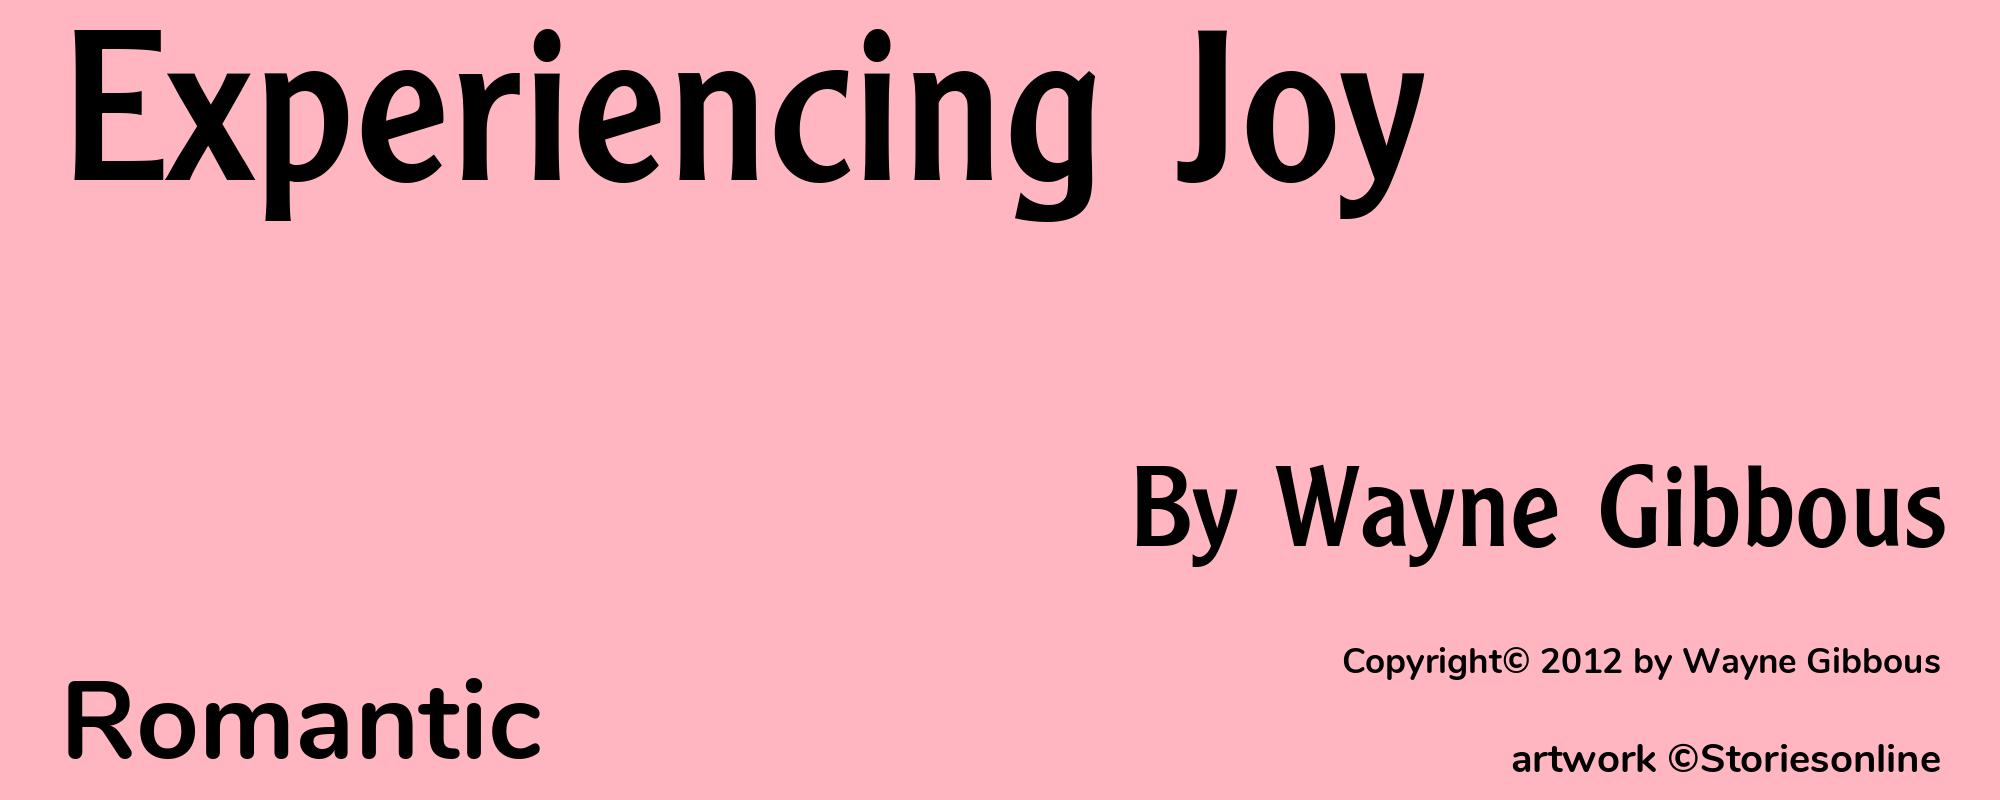 Experiencing Joy - Cover